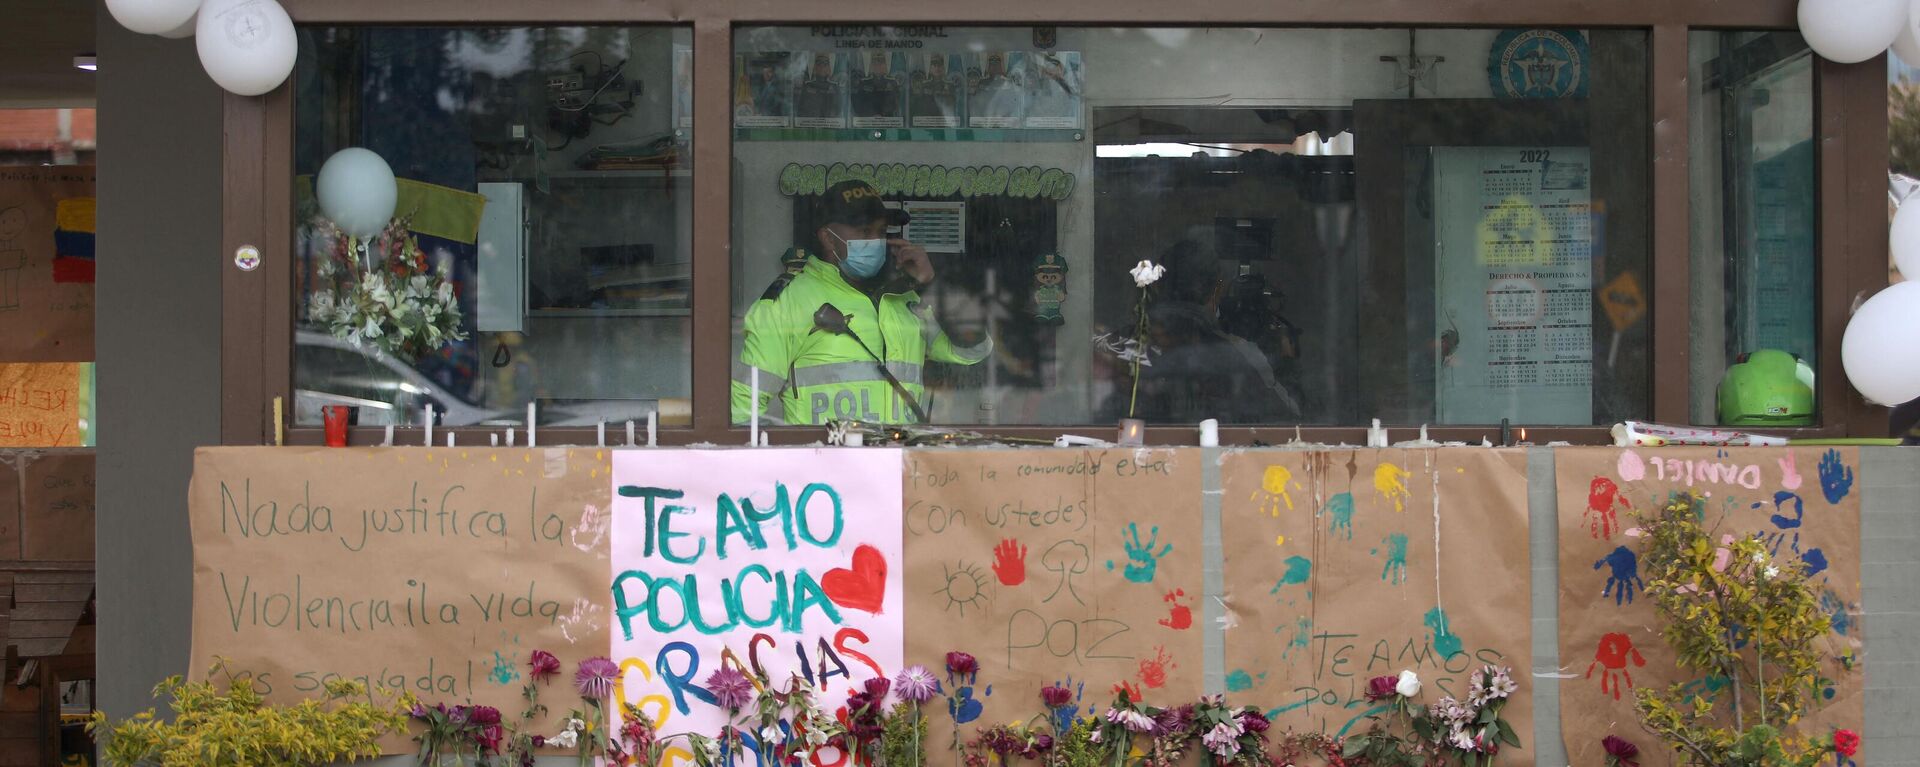 el atentado terrorista perpetrado contra un puesto policial en la Ciudad Bolívar, al sur de Bogotá, que causó la muerte de dos menores. - Sputnik Mundo, 1920, 29.03.2022